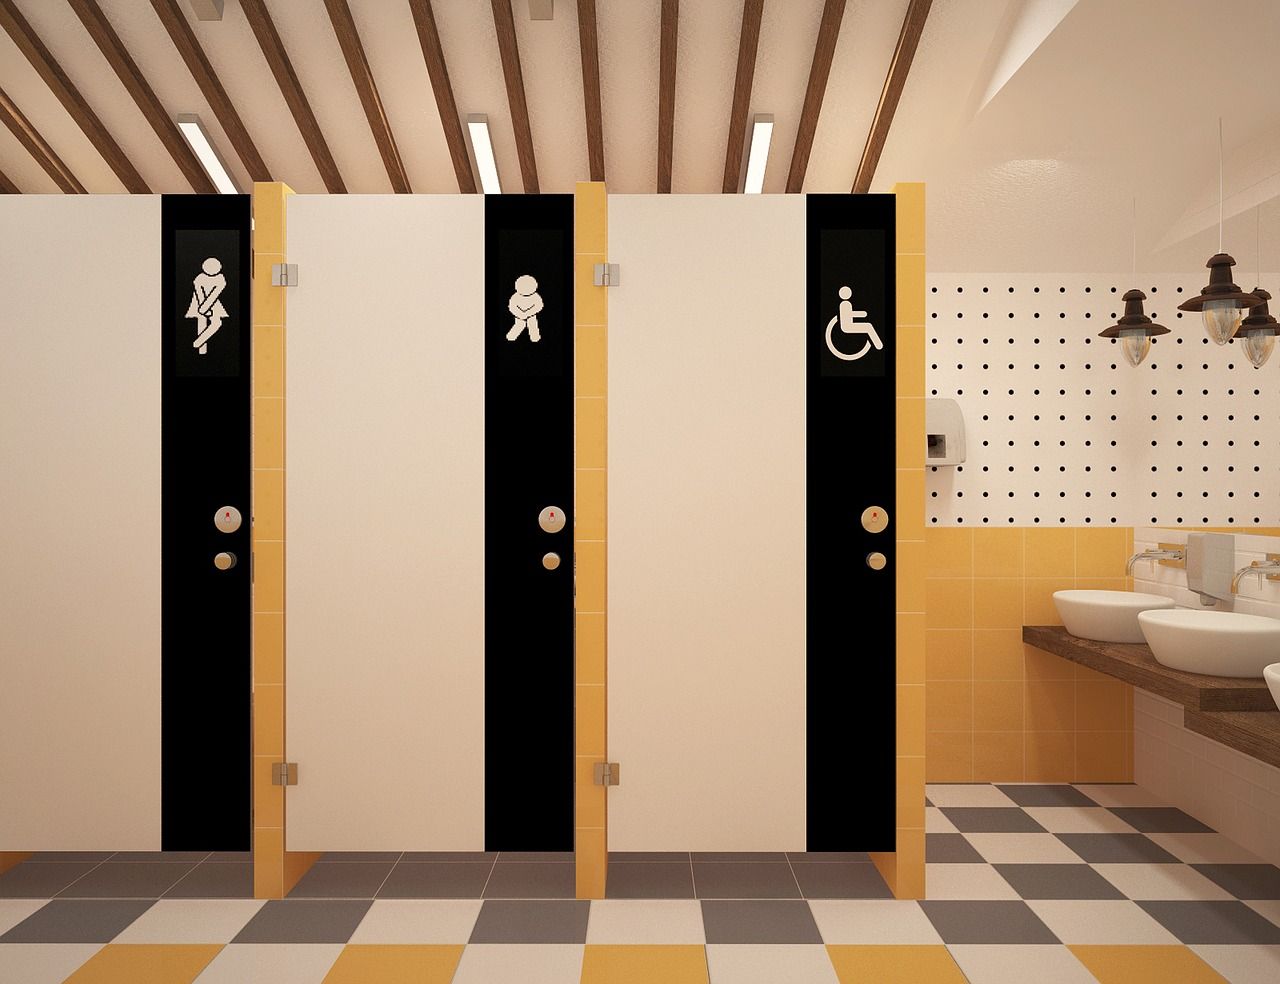 Jakie materiały higieniczne powinny znaleźć się w toalecie publicznej?